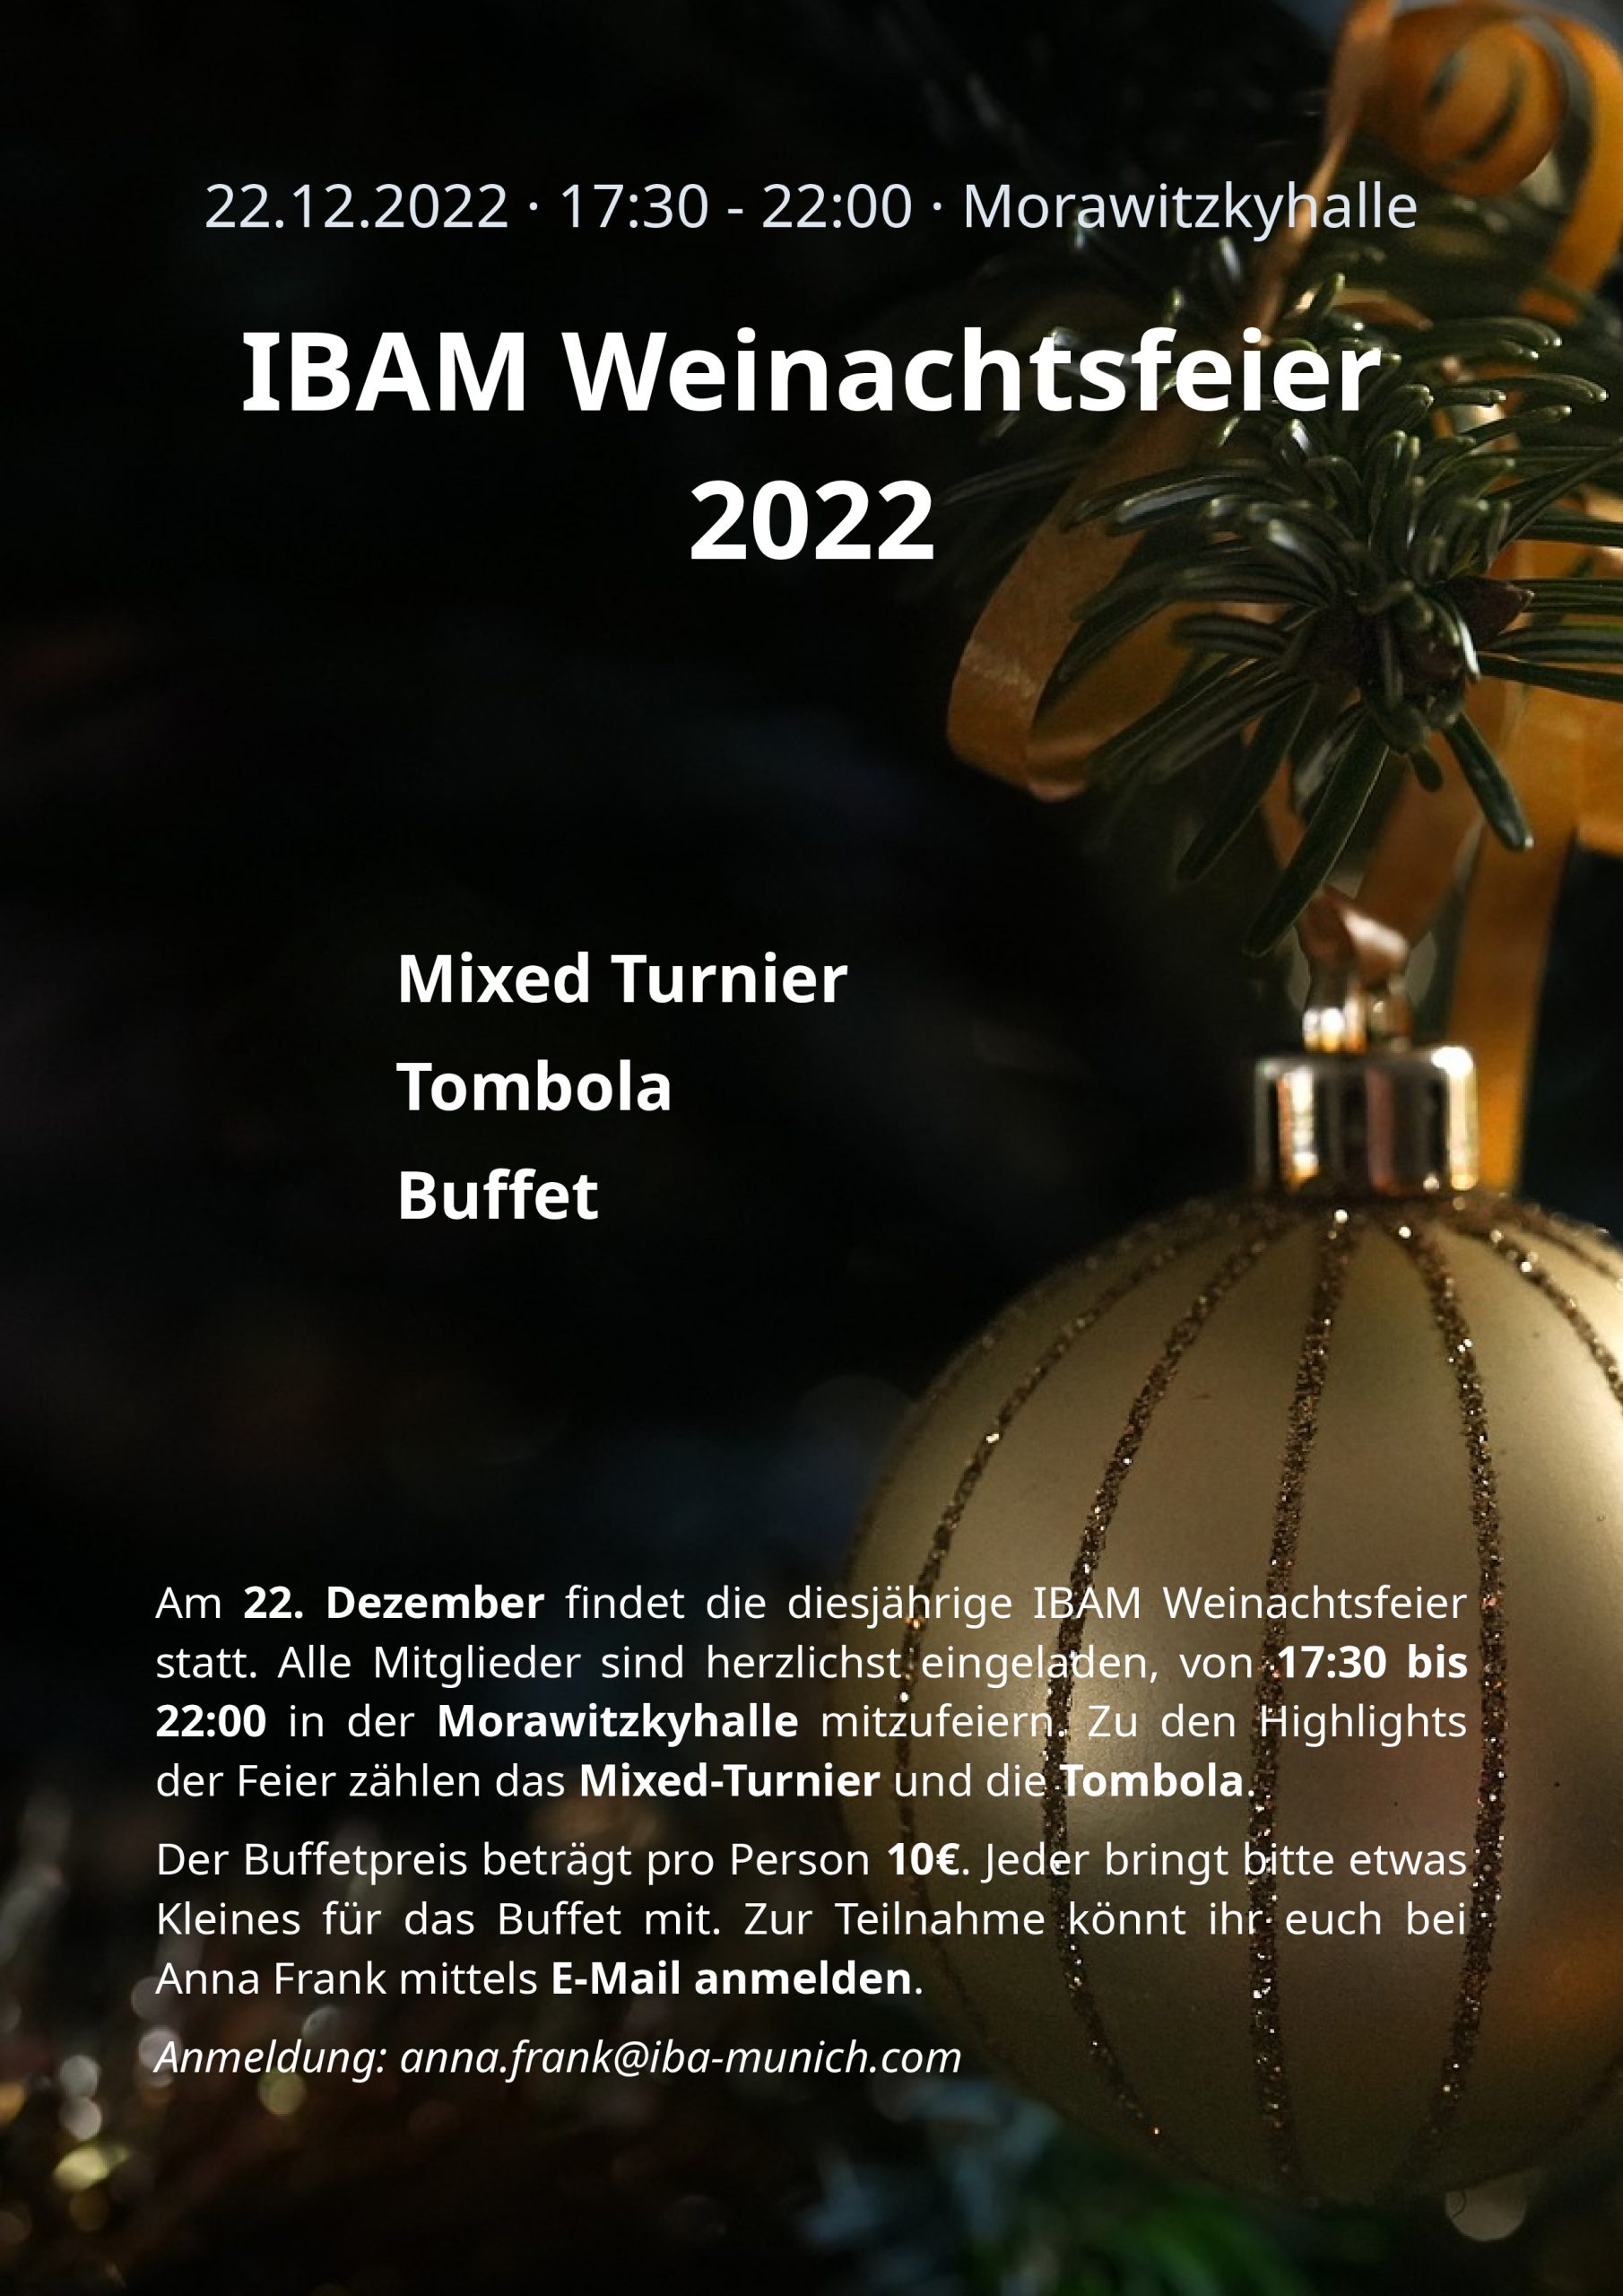 IBAM Weinachtsfeier 2022